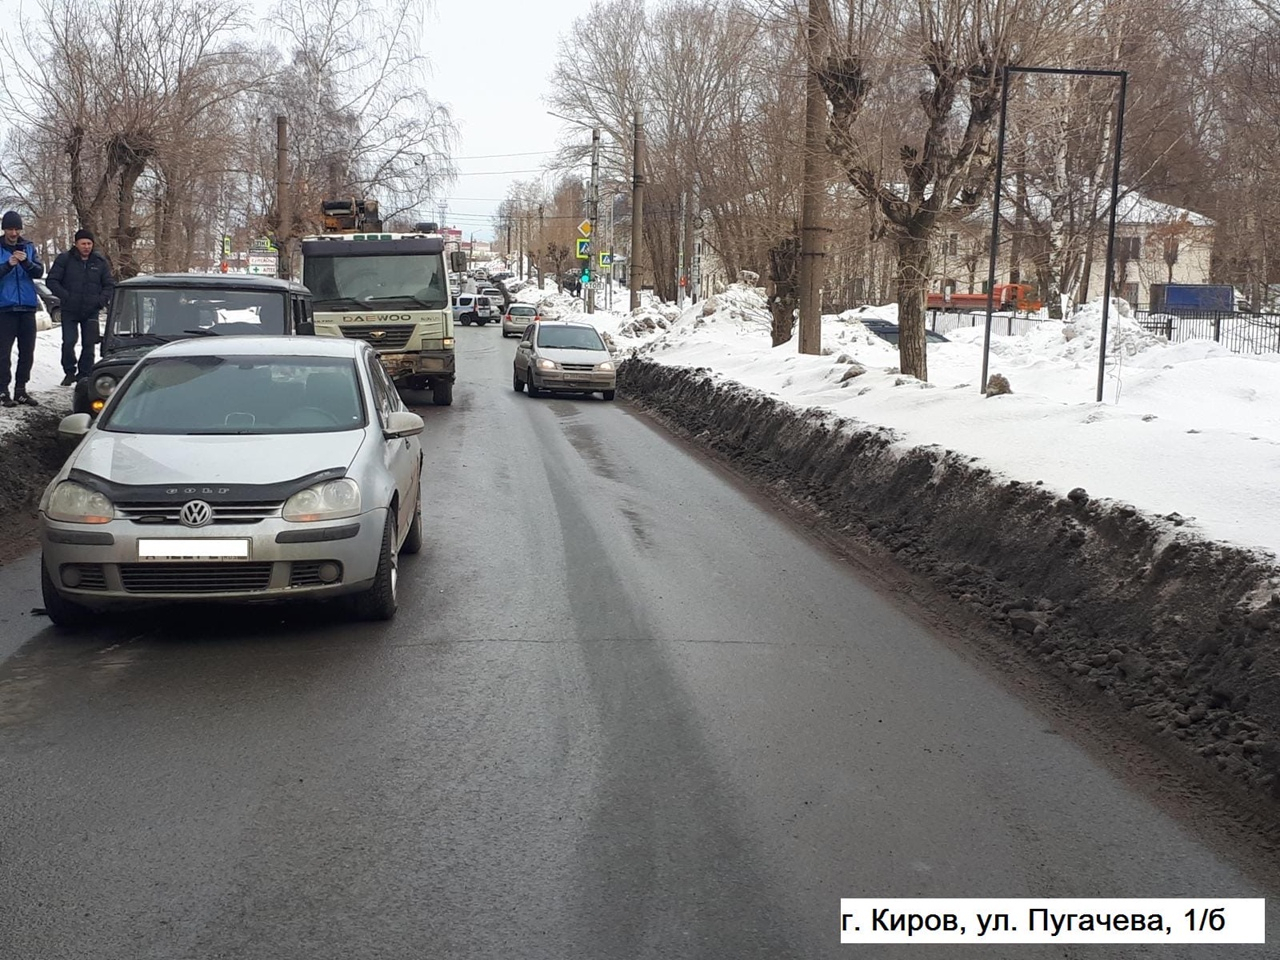 В Кирове на Пугачева произошла массовая авария с тремя машинами